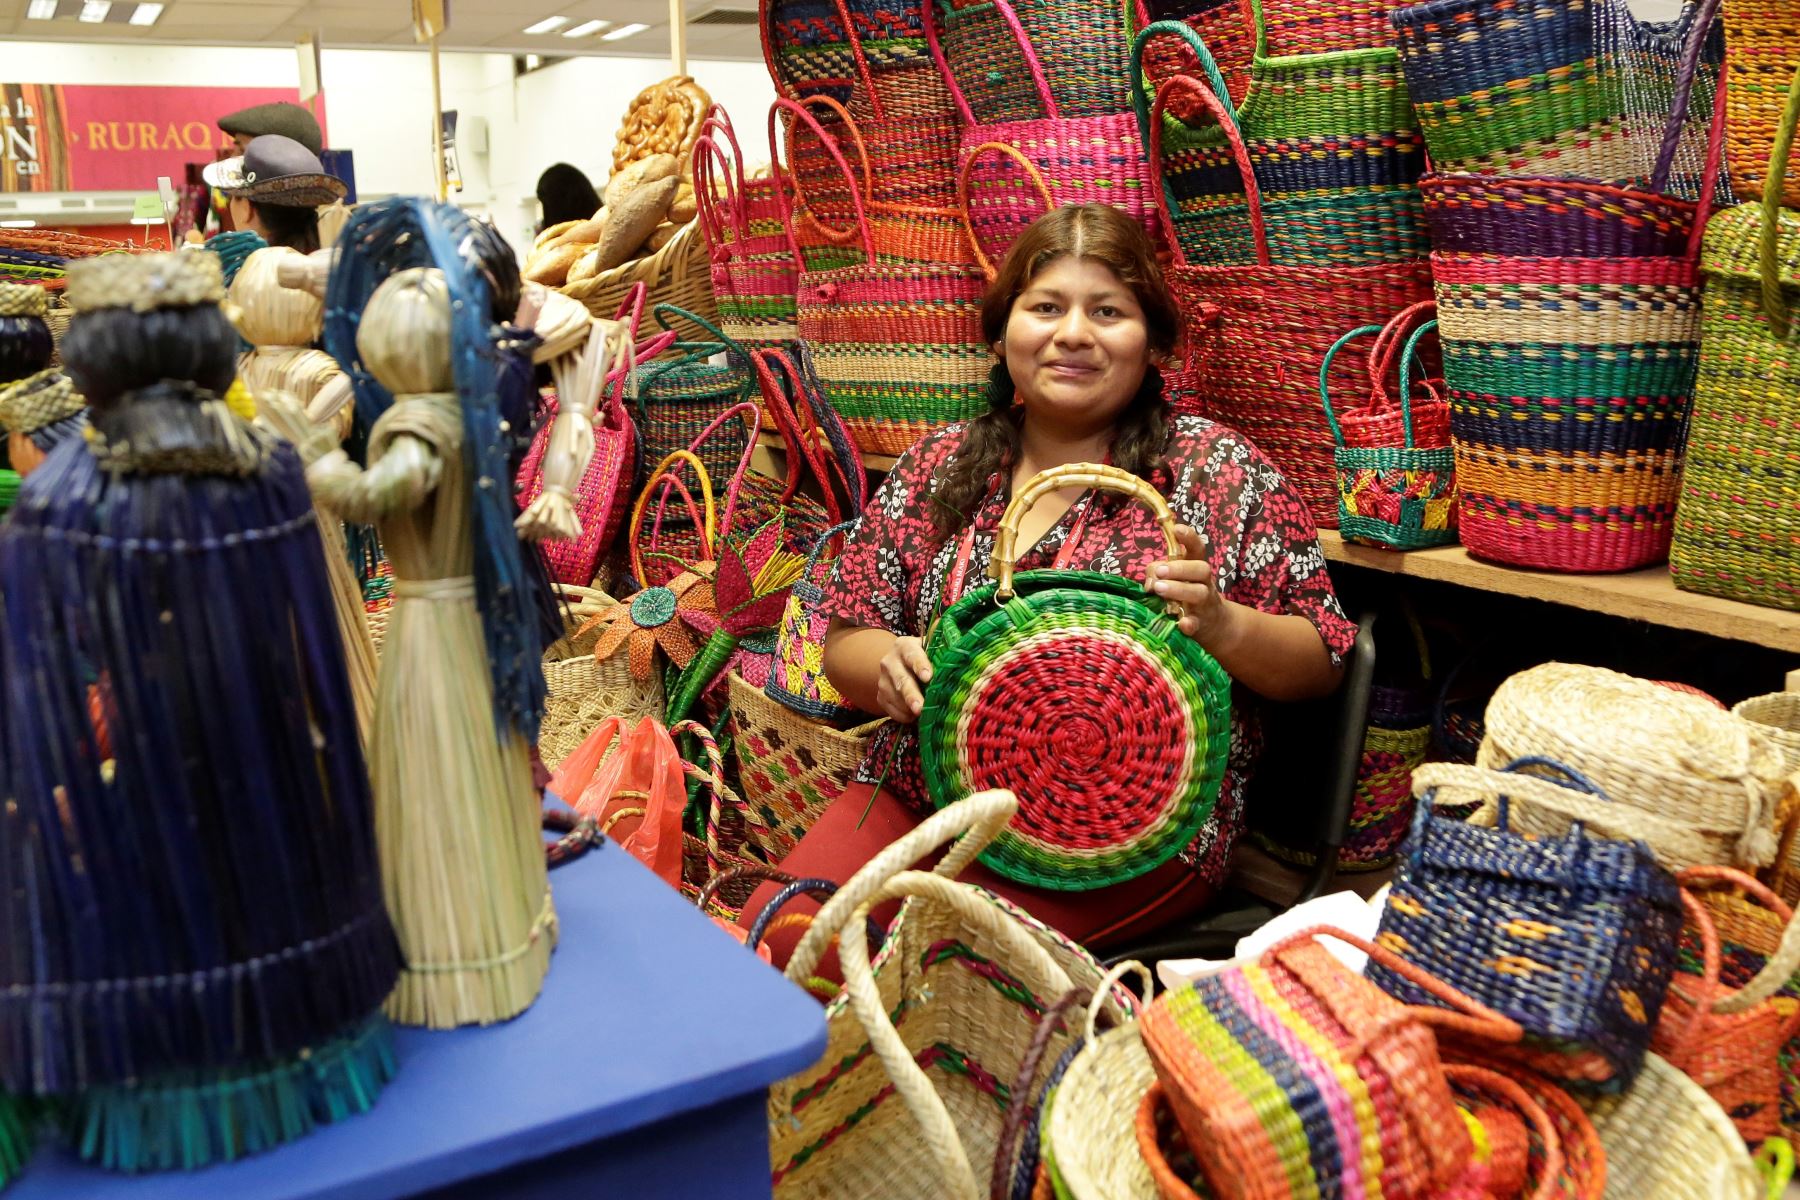 Artistas tradicionales de diversas regiones llegan a Lima para la feria Ruraq maki en el Ministerio de Cultura. Foto: Ministerio de Cultura/Difusión